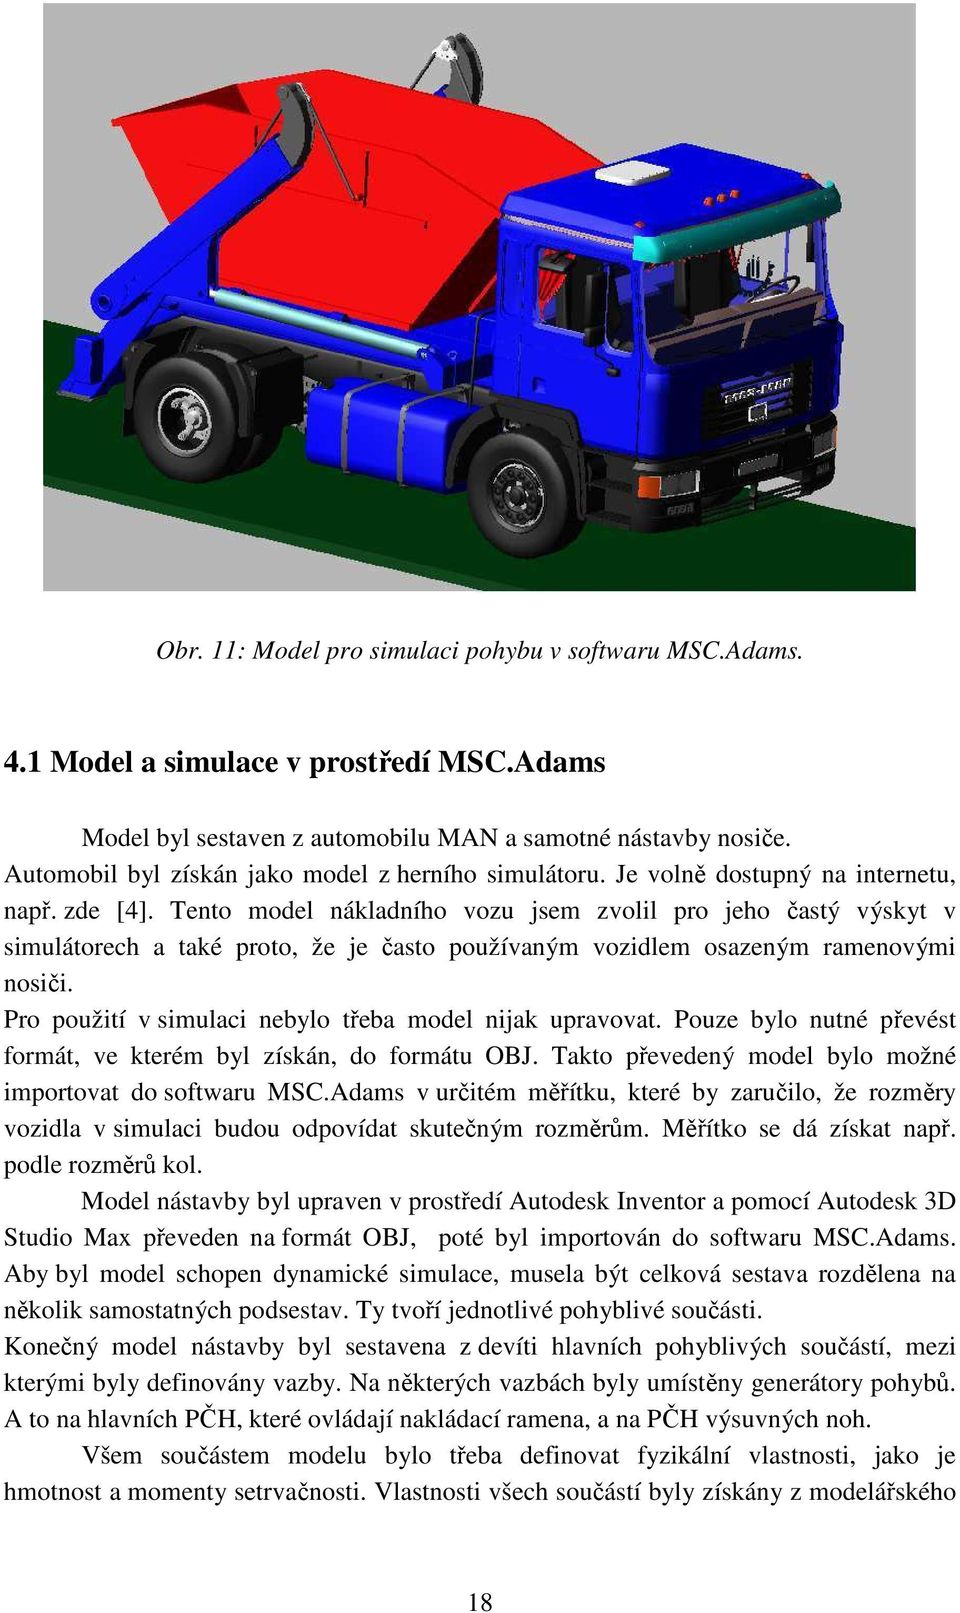 Tento model nákladního vozu jsem zvolil pro jeho astý výskyt v simulátorech a také proto, že je asto používaným vozidlem osazeným ramenovými nosi i.